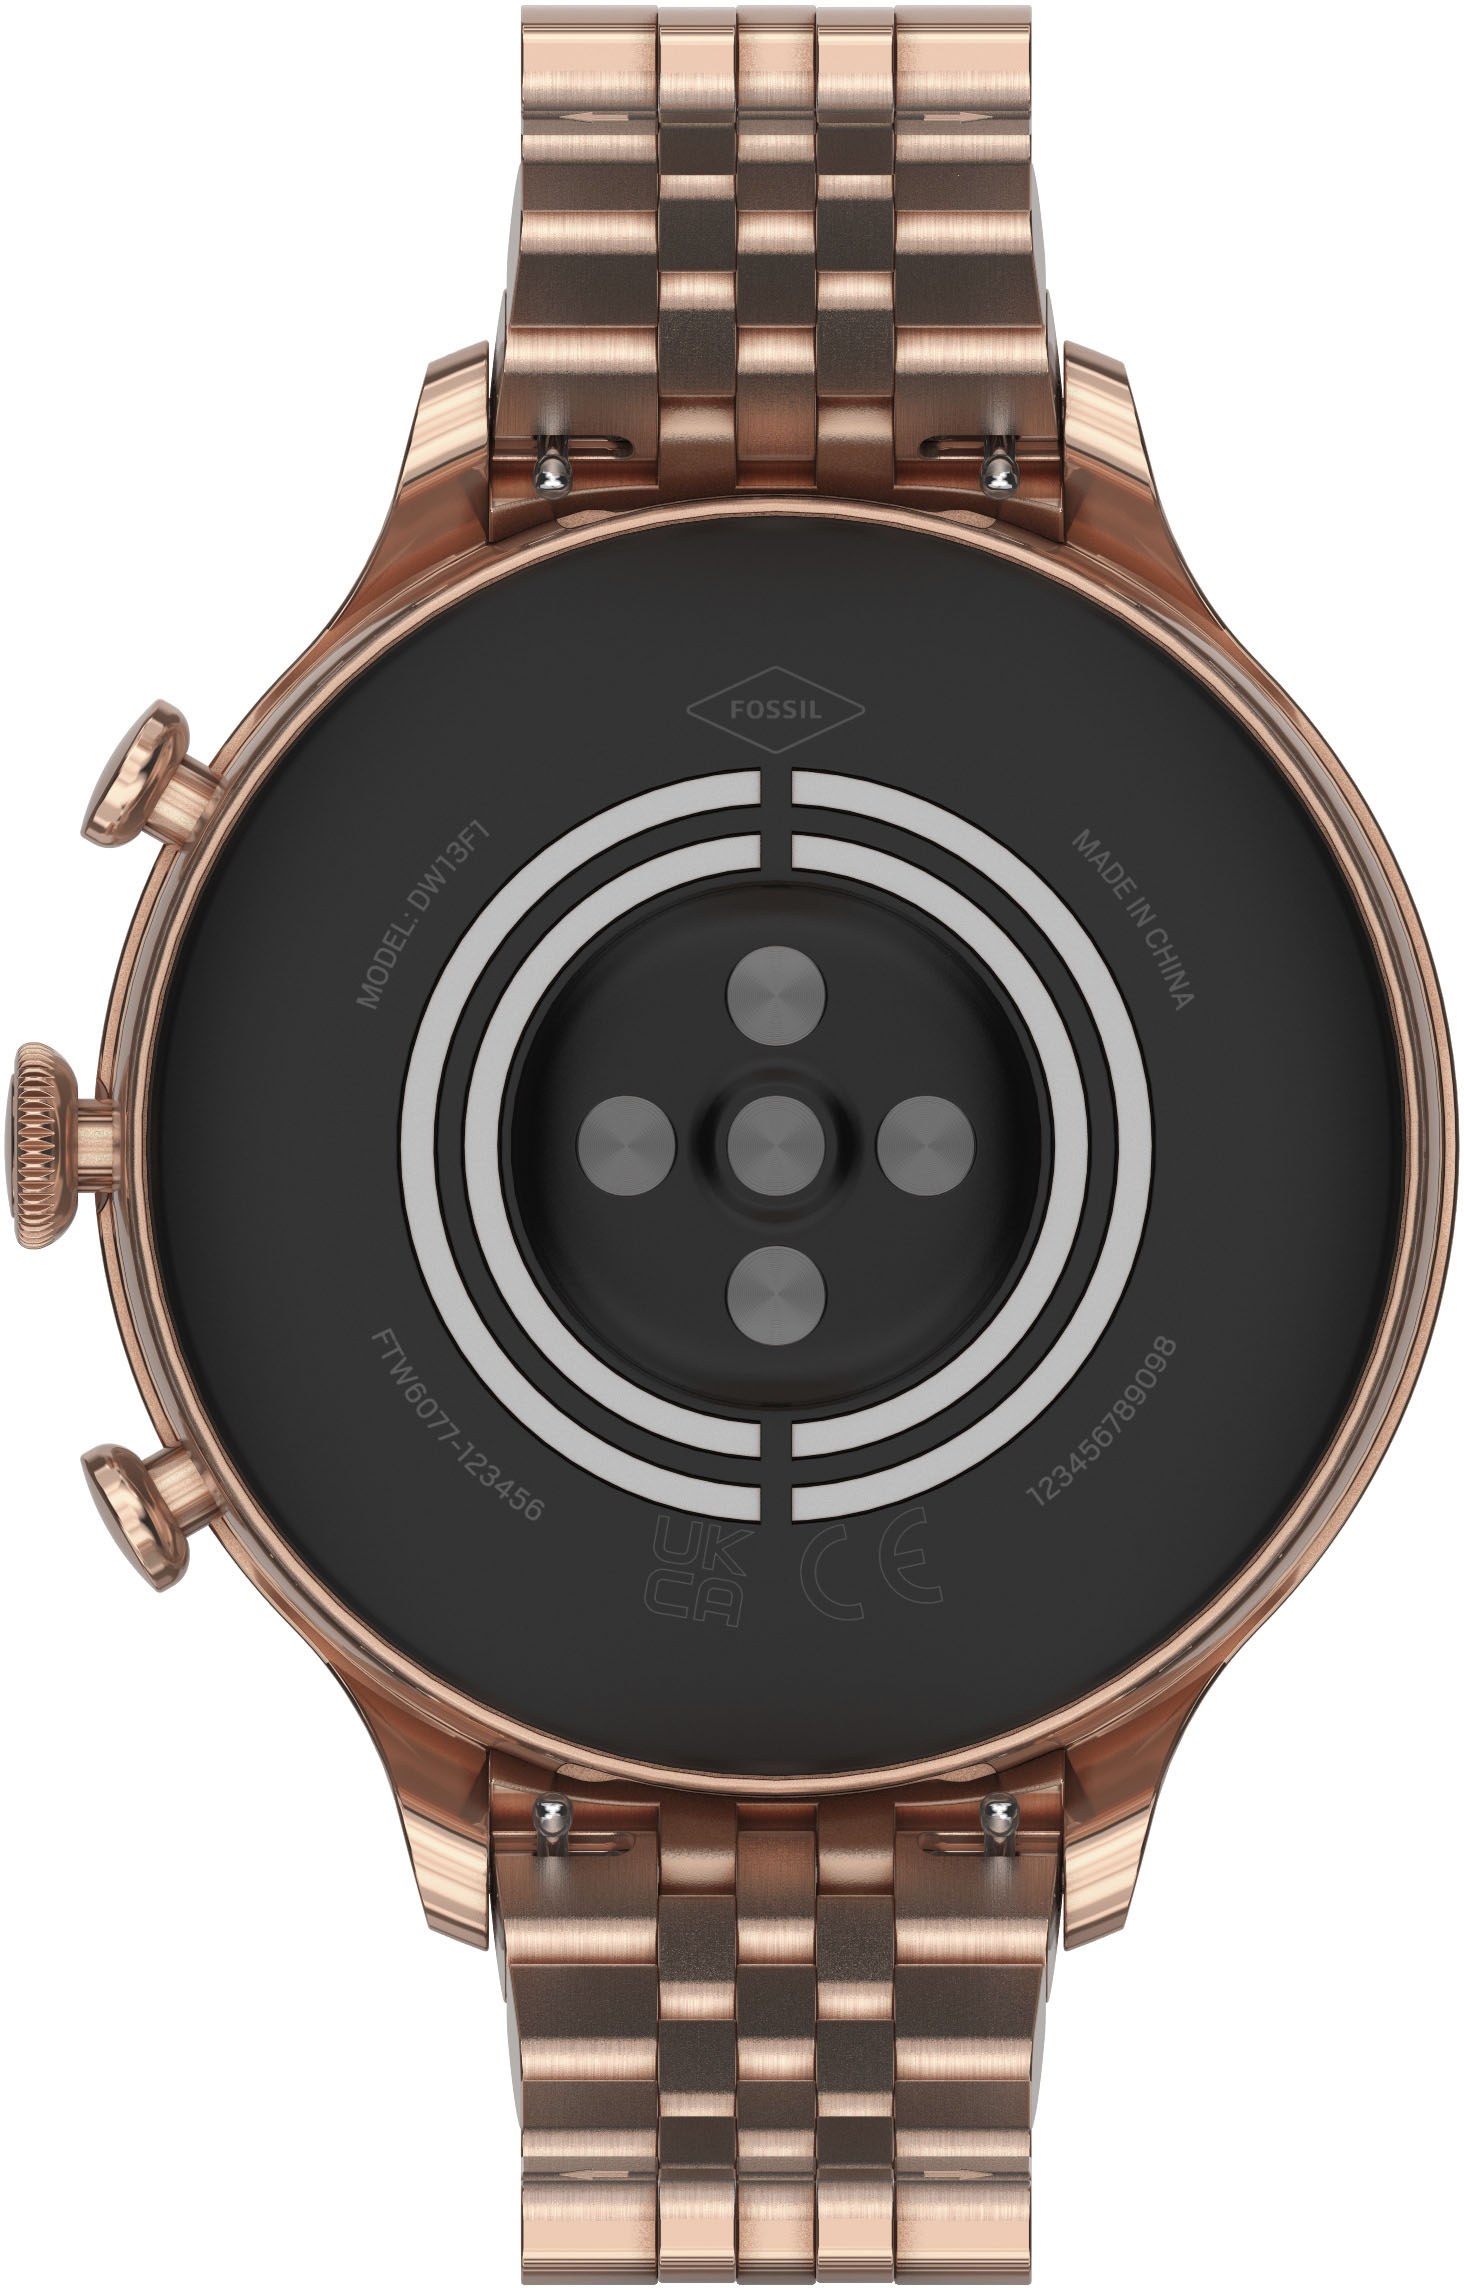 Back View: Fossil - Hybrid HR Smartwatch 42mm - Dark Brown